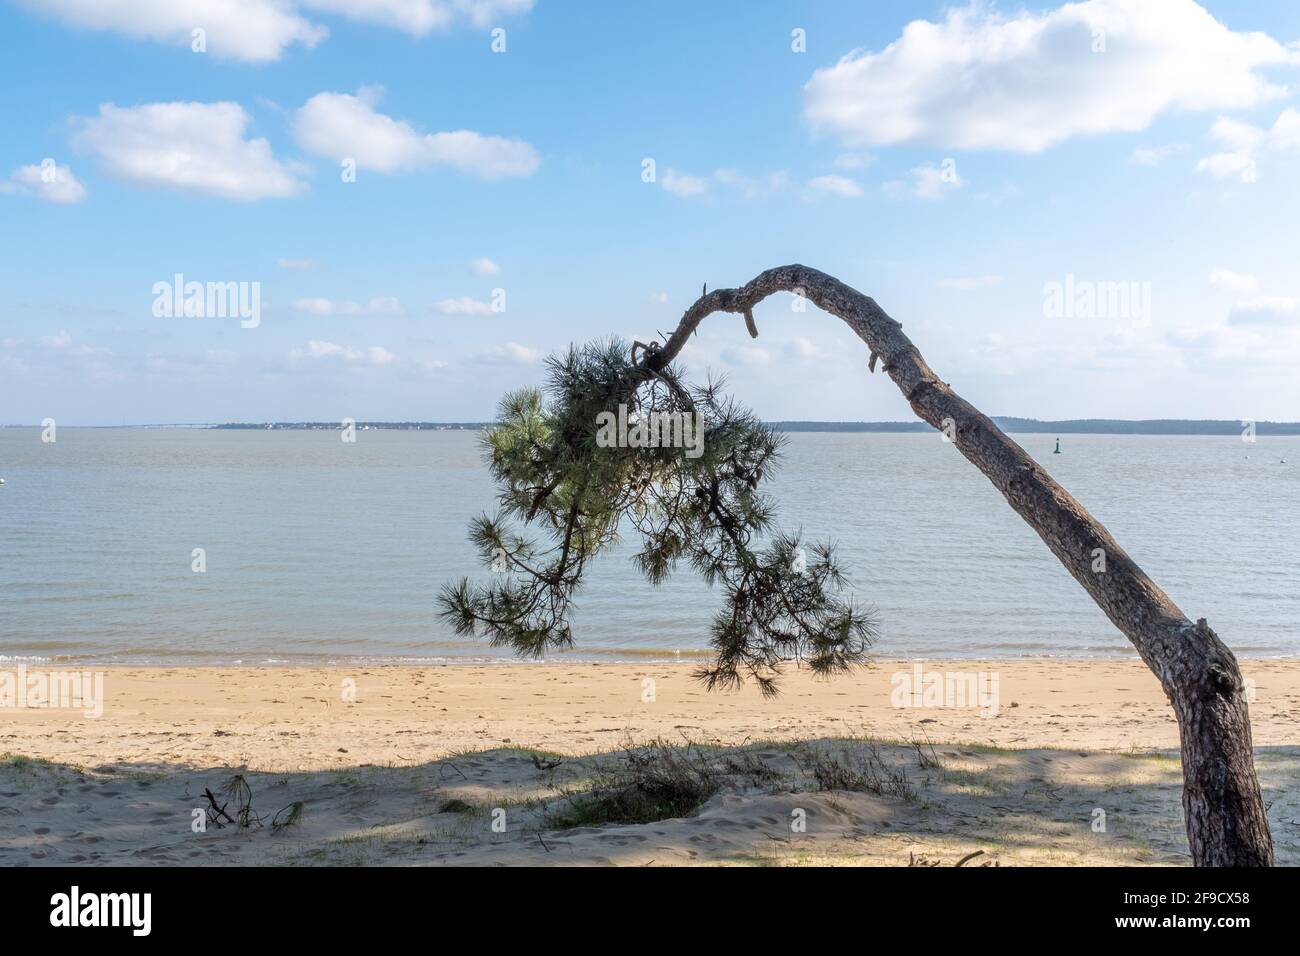 PIN d'une forme étrange sur une plage vide face au continent, pris le jour d'hiver ensoleillé sur l'île d'Oléron, Charente, France Banque D'Images